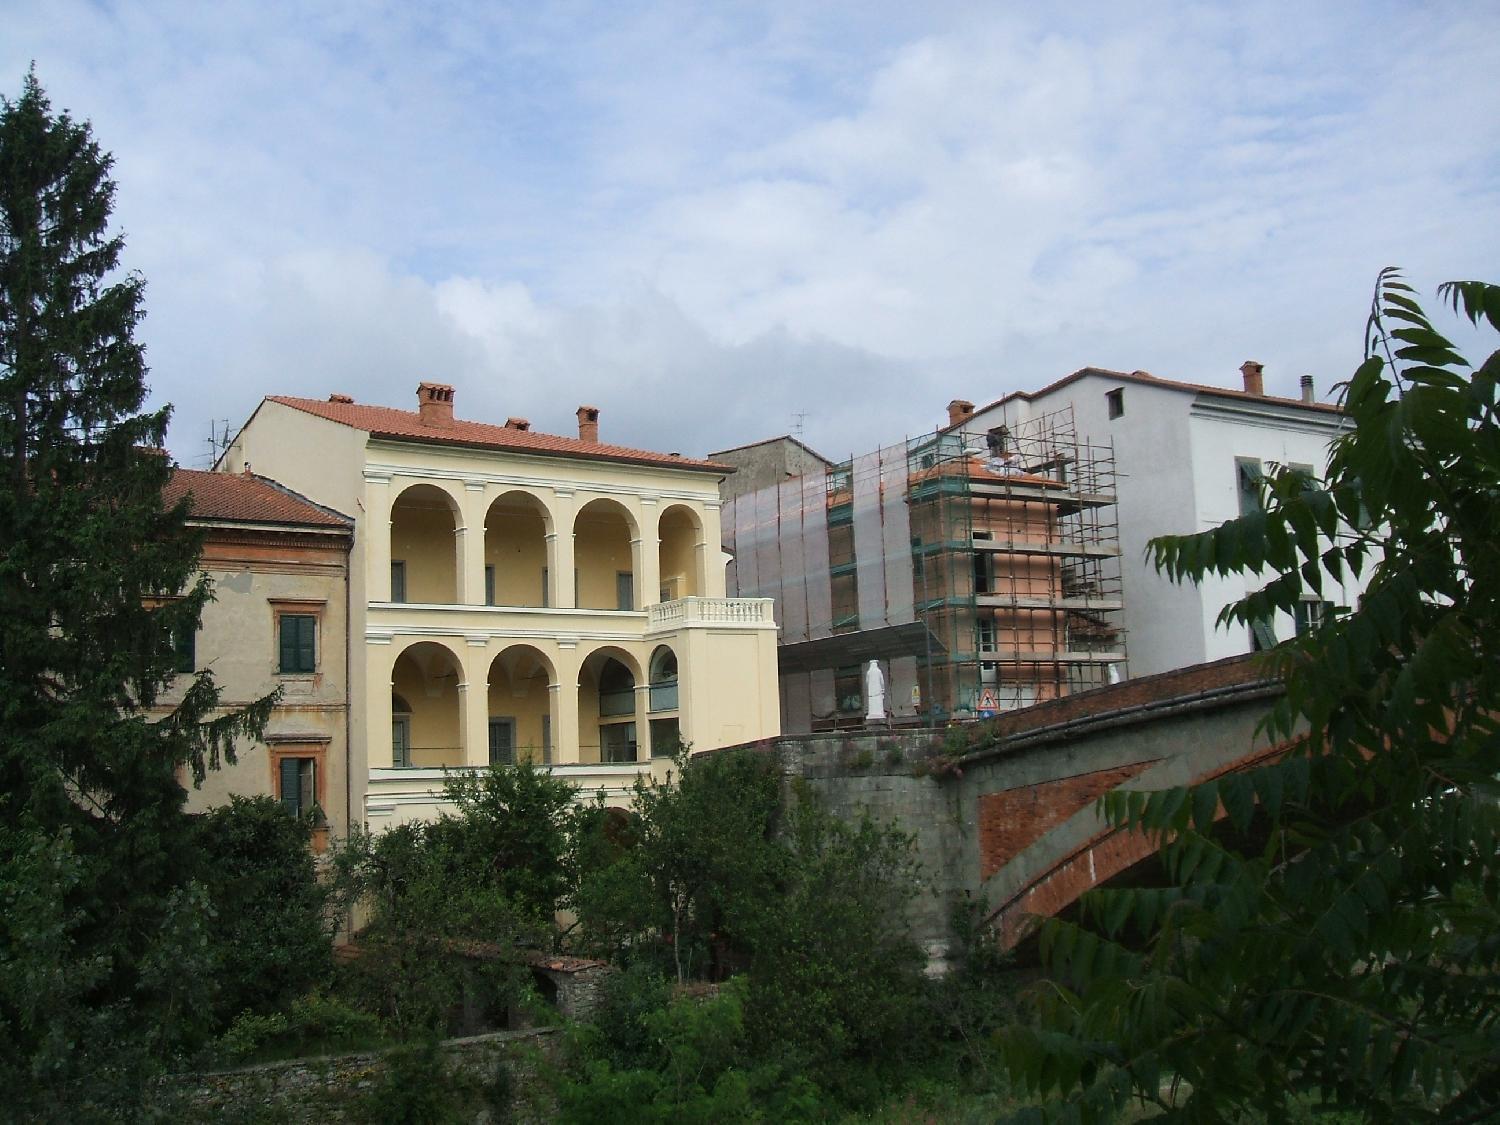 Studio di progettazione - Studio tecnico associato Tondin - Miglioramenti sismici - Restauro palazzo storico Schiavi